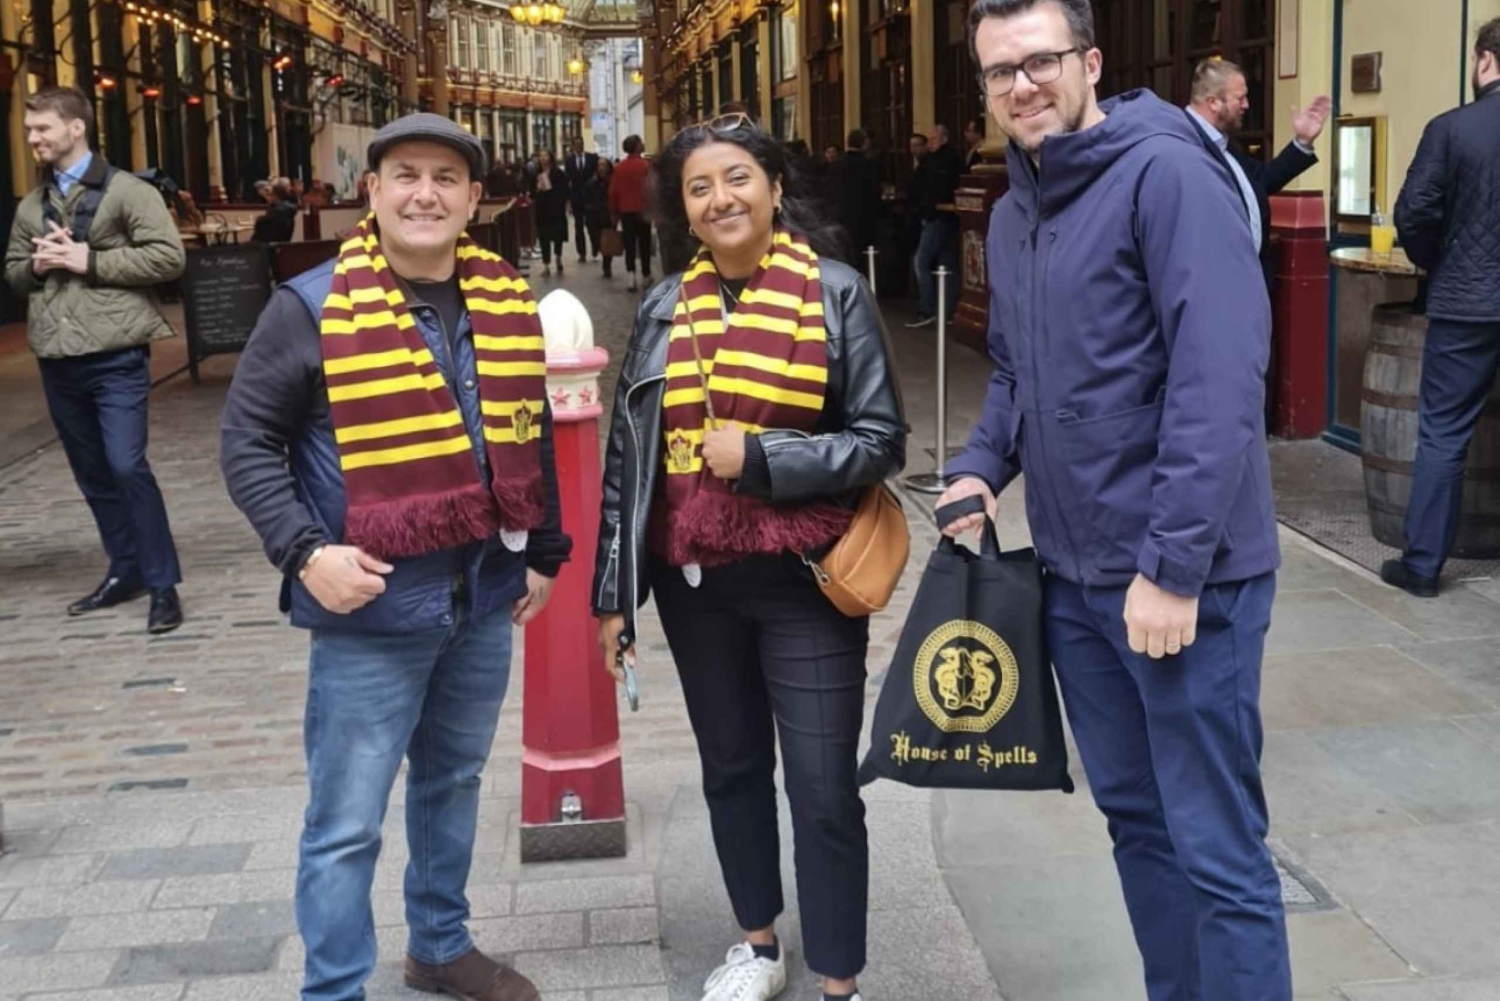 Londen: Harry Potter Film Set Taxi Tour ervaring